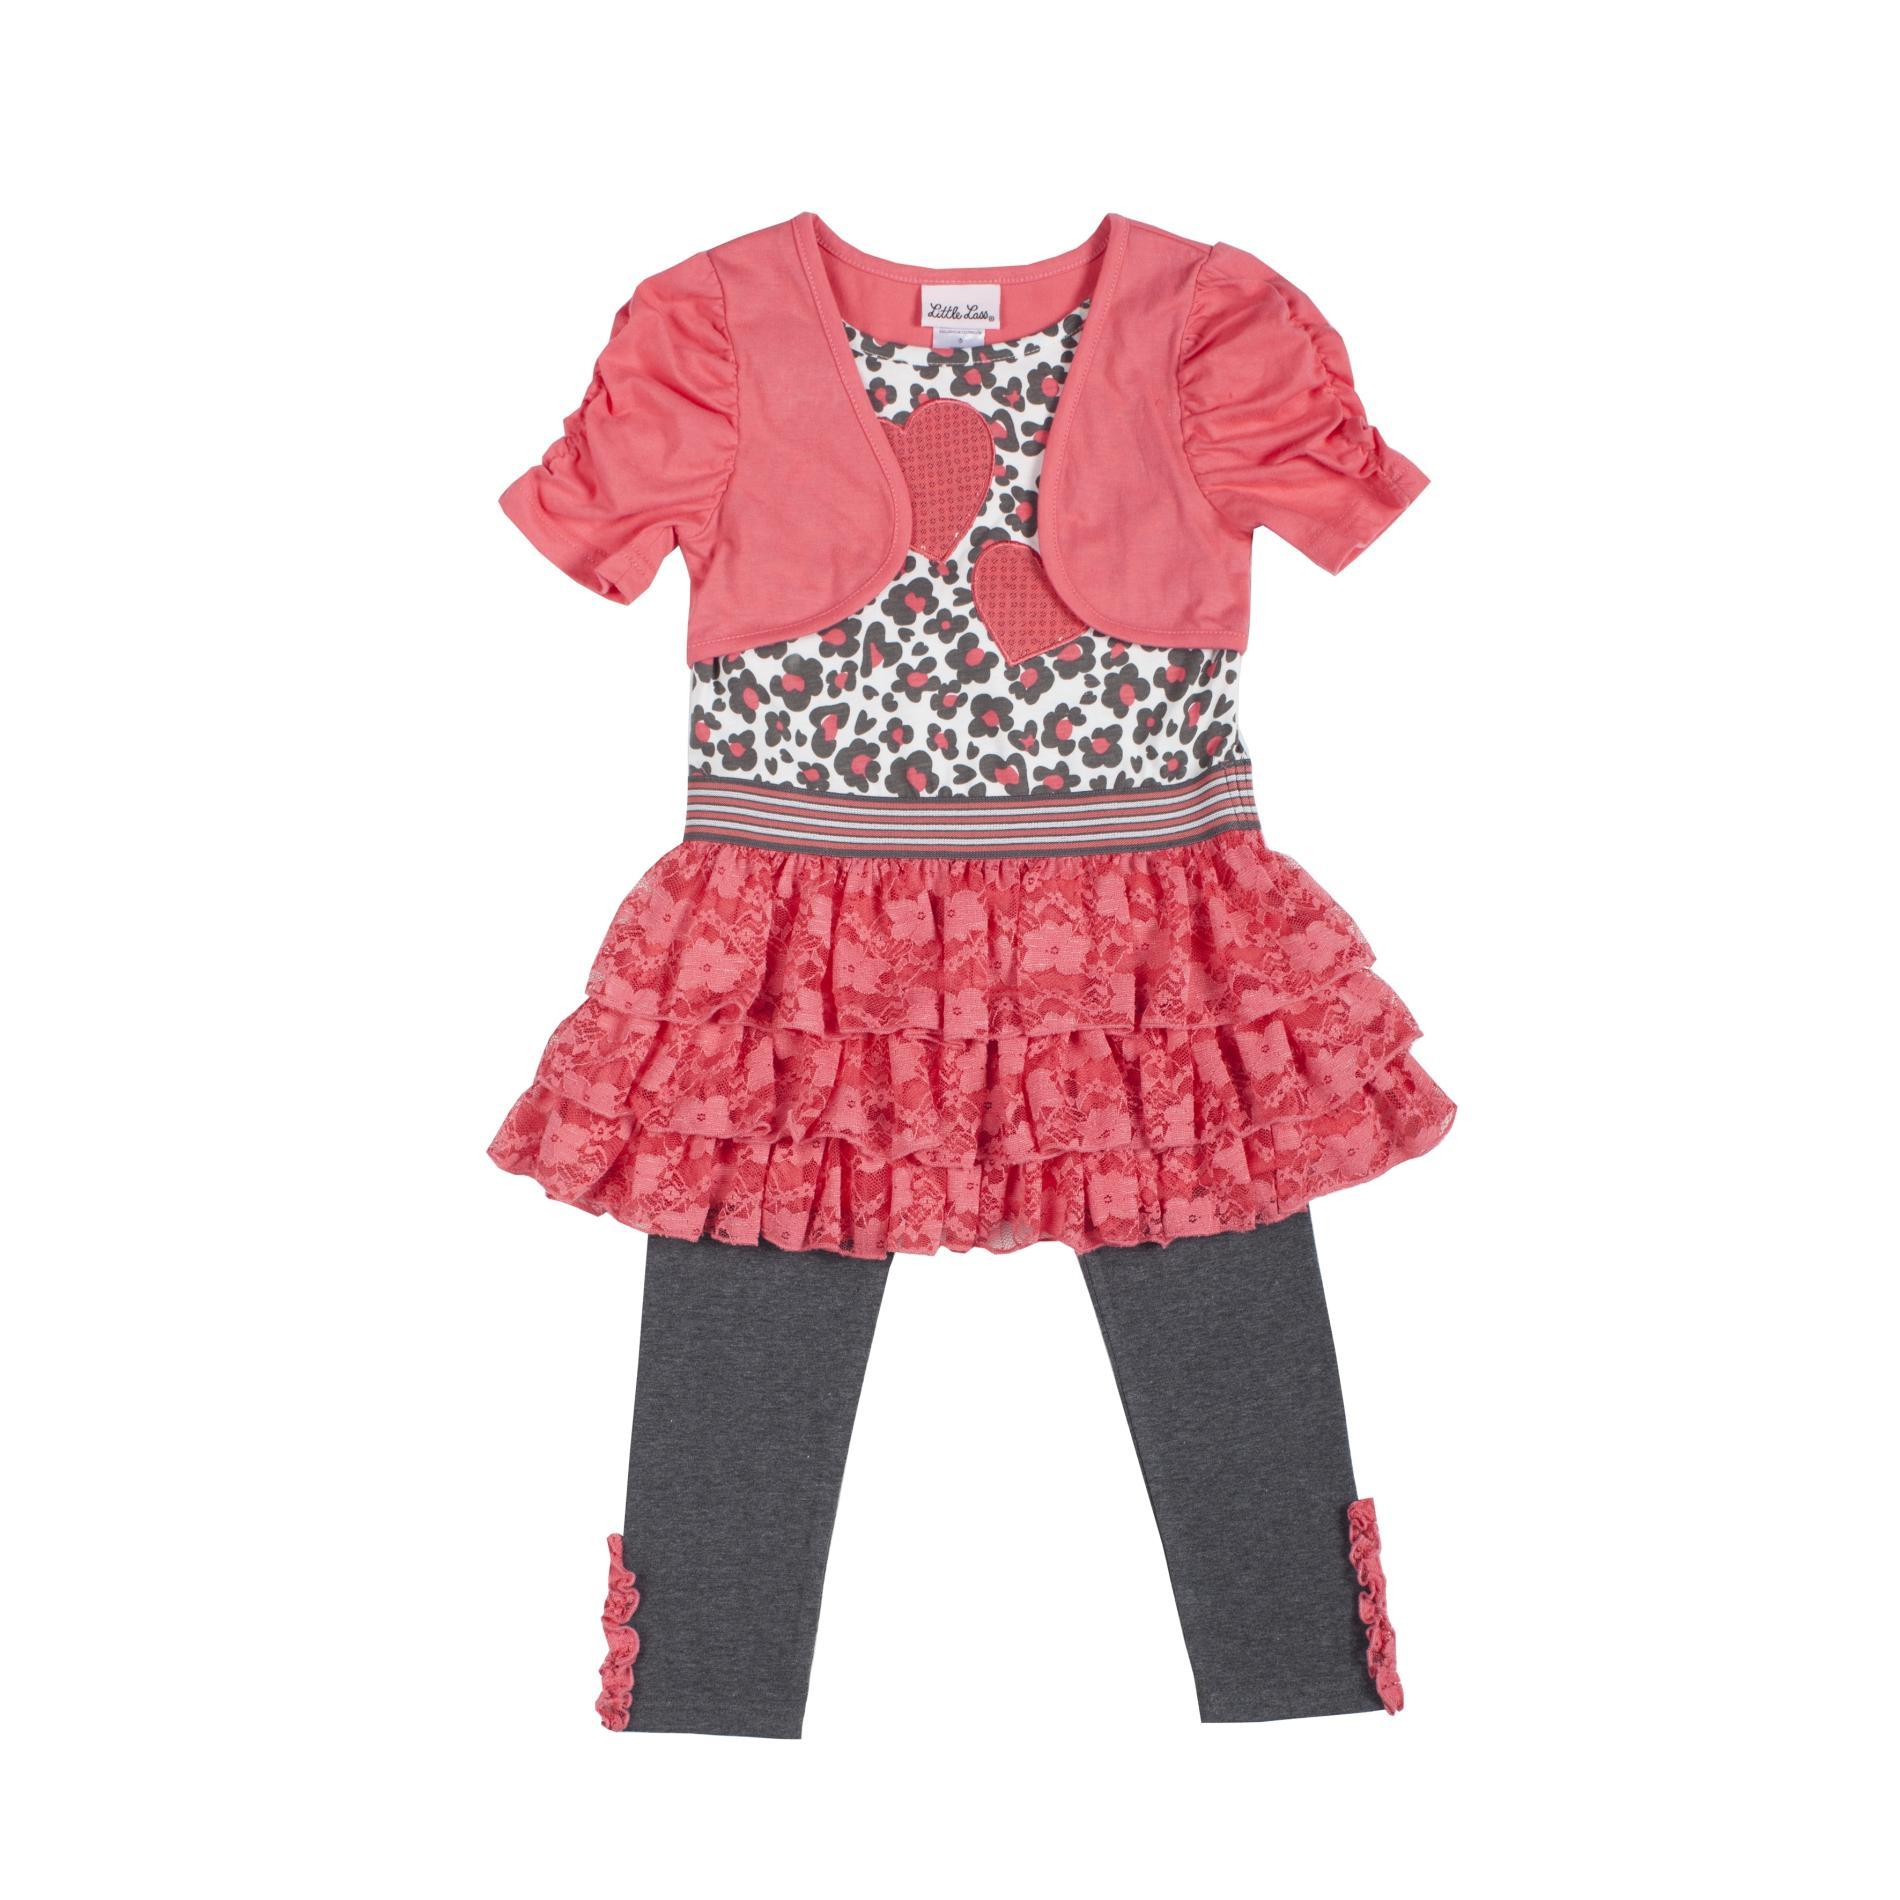 Little Lass Infant & Toddler Girl's Chambray Dress & Leggings - Floral